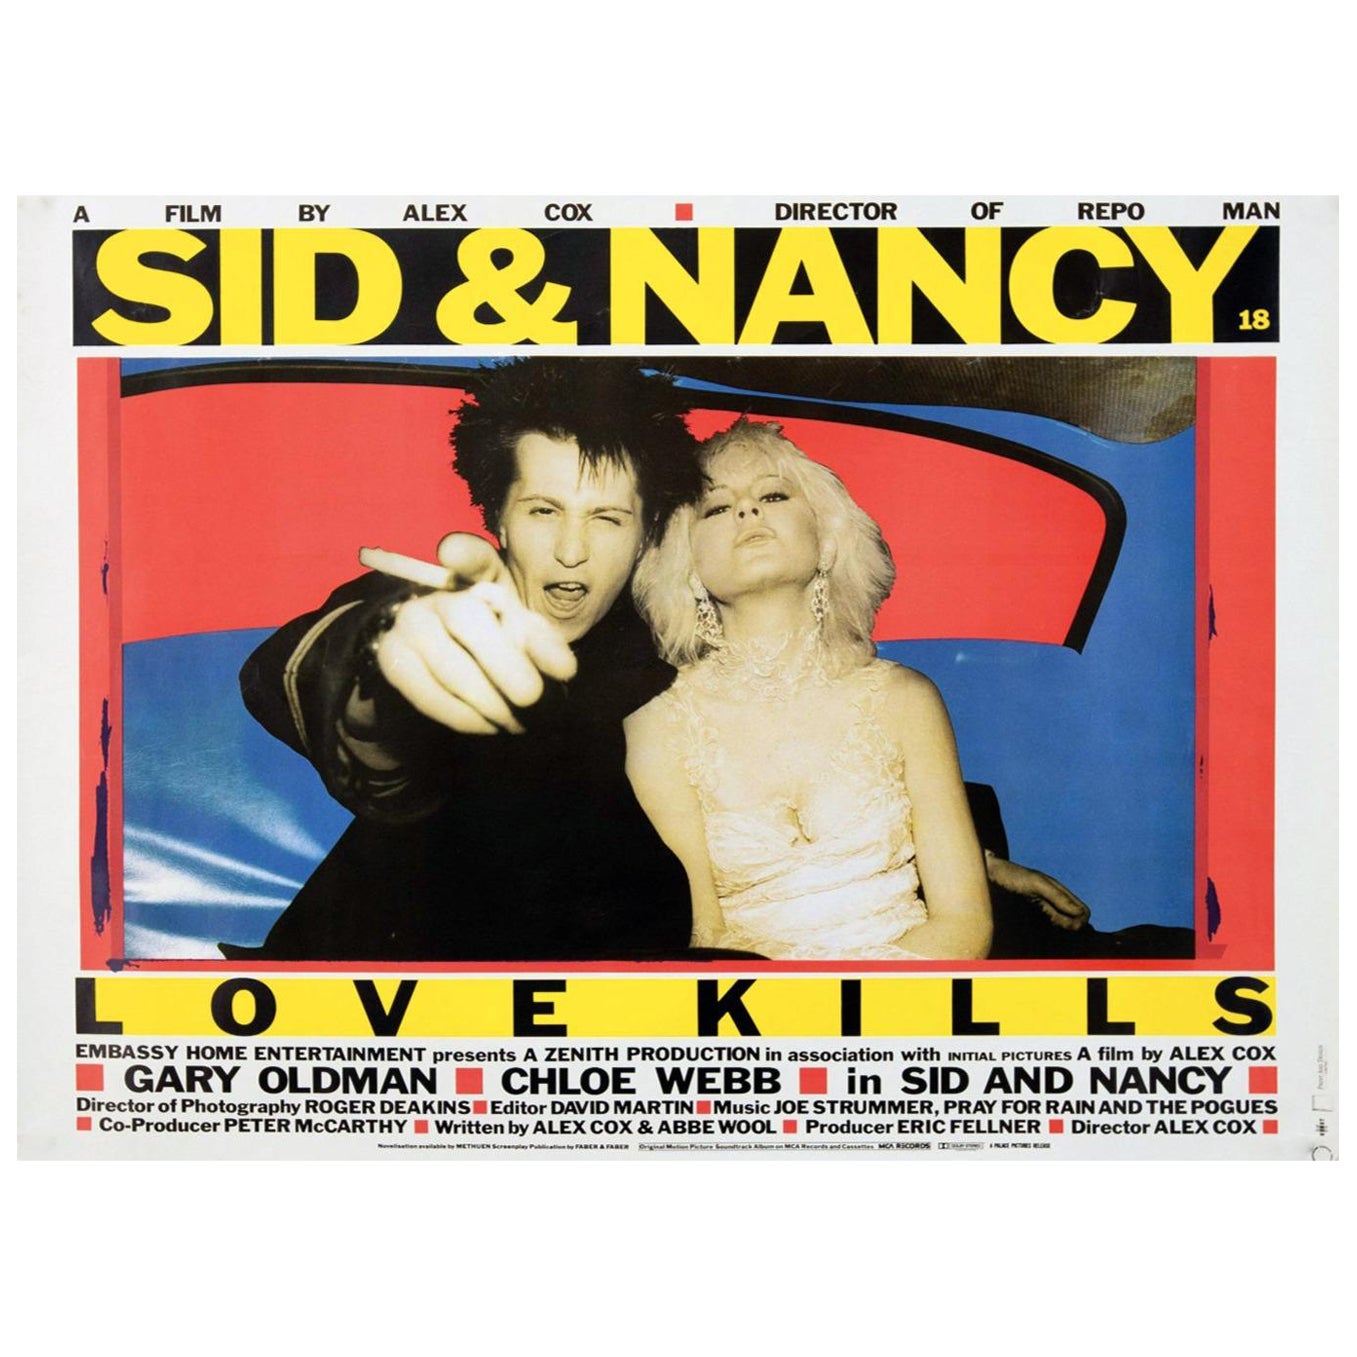 1983 Sid & Nancy Original Vintage Poster For Sale